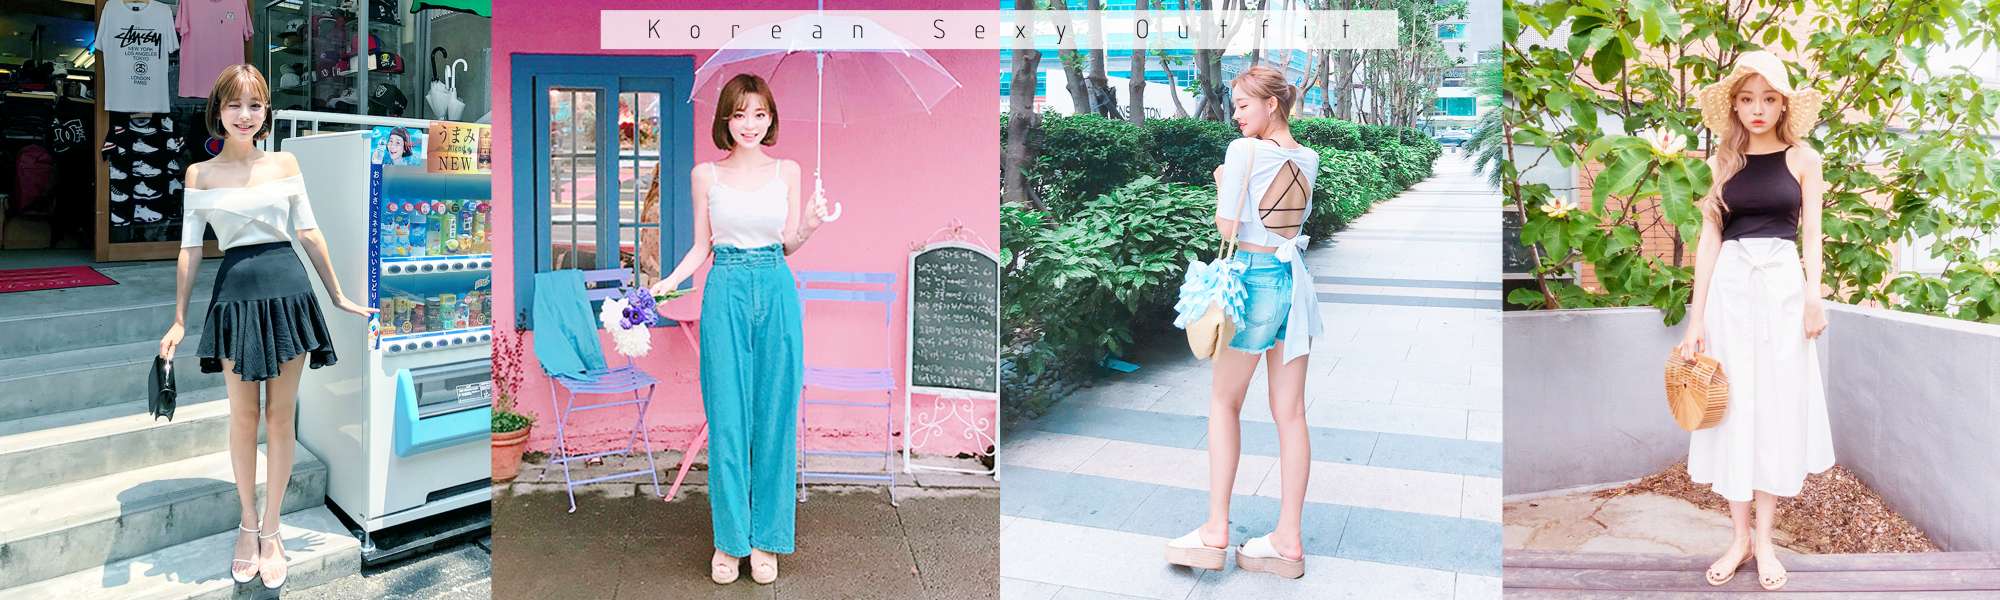 Top 4 Sexy Korean Outfit Ideas that don't overdo it! - Fasheholic